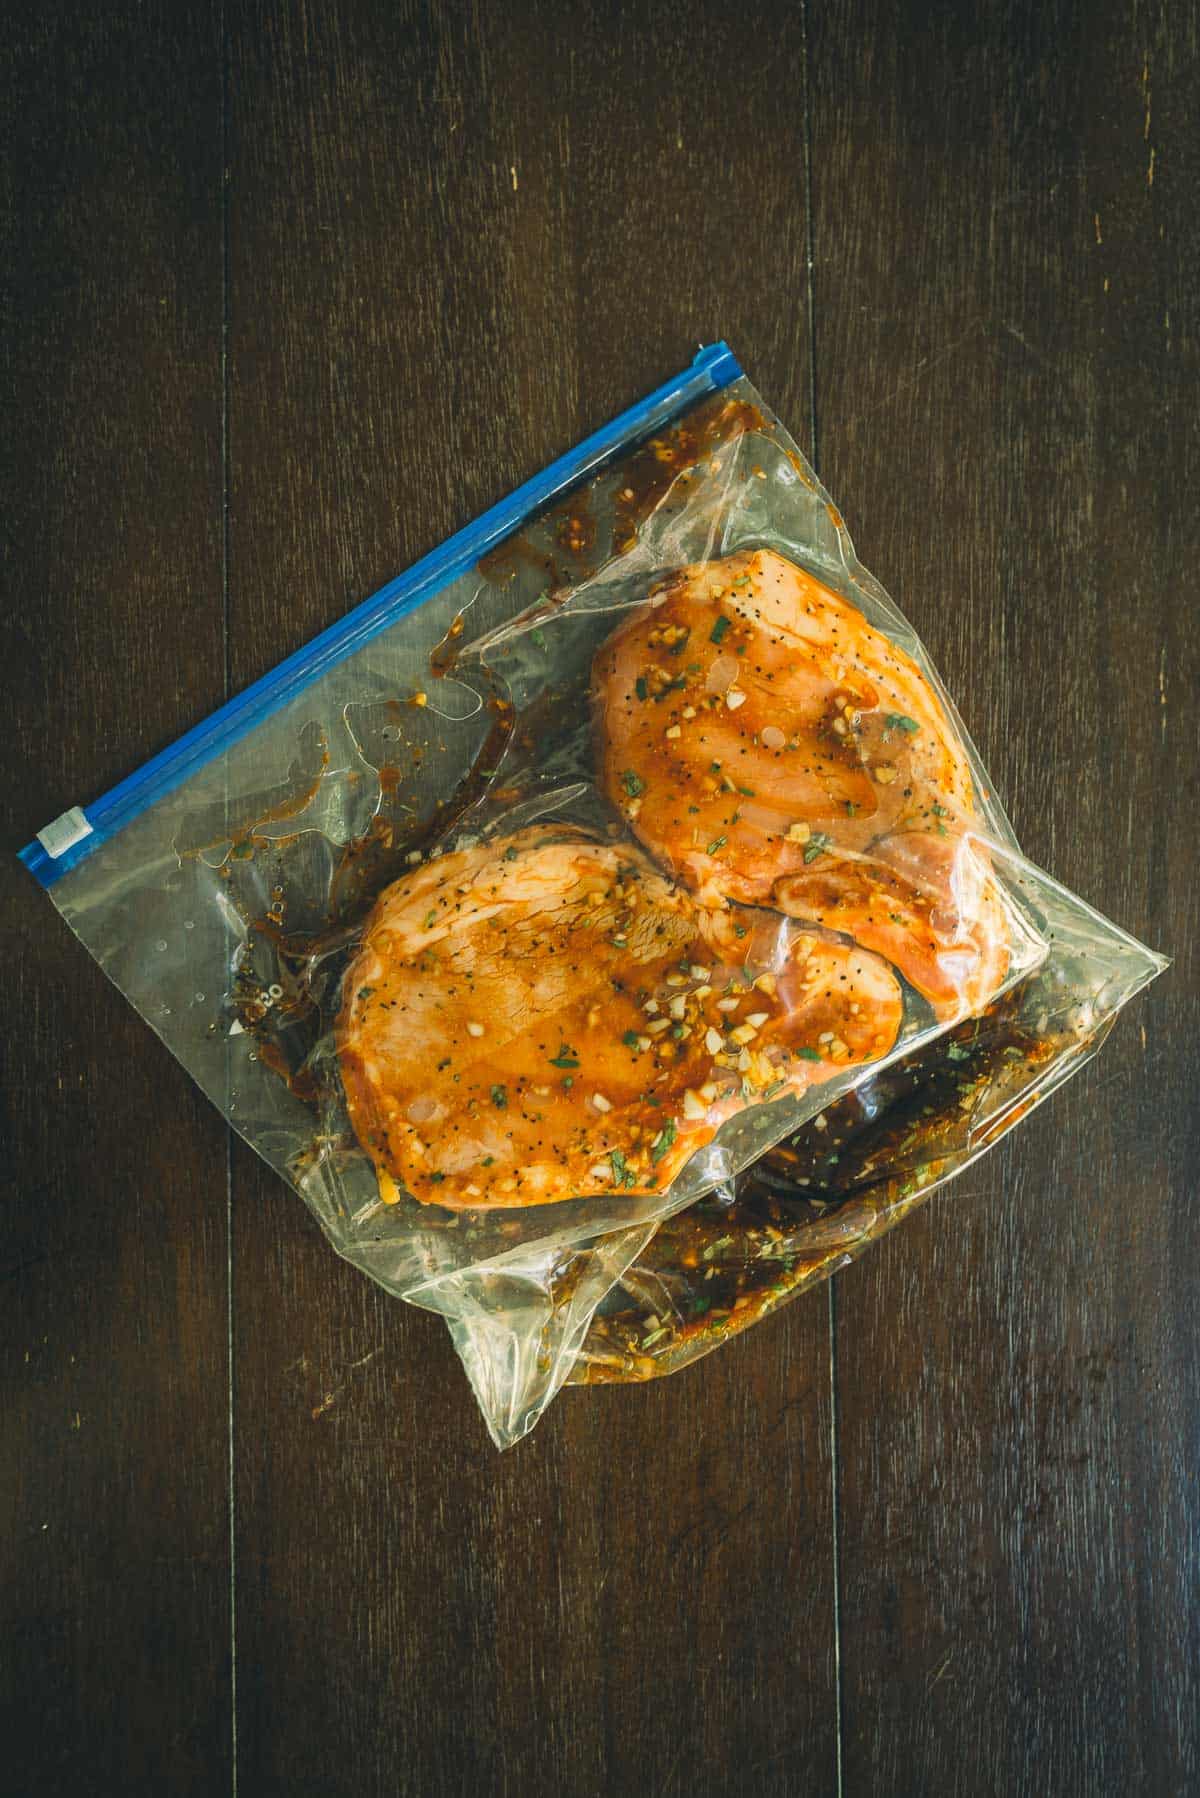 Bone-in pork chops marinating in a plastic bag.